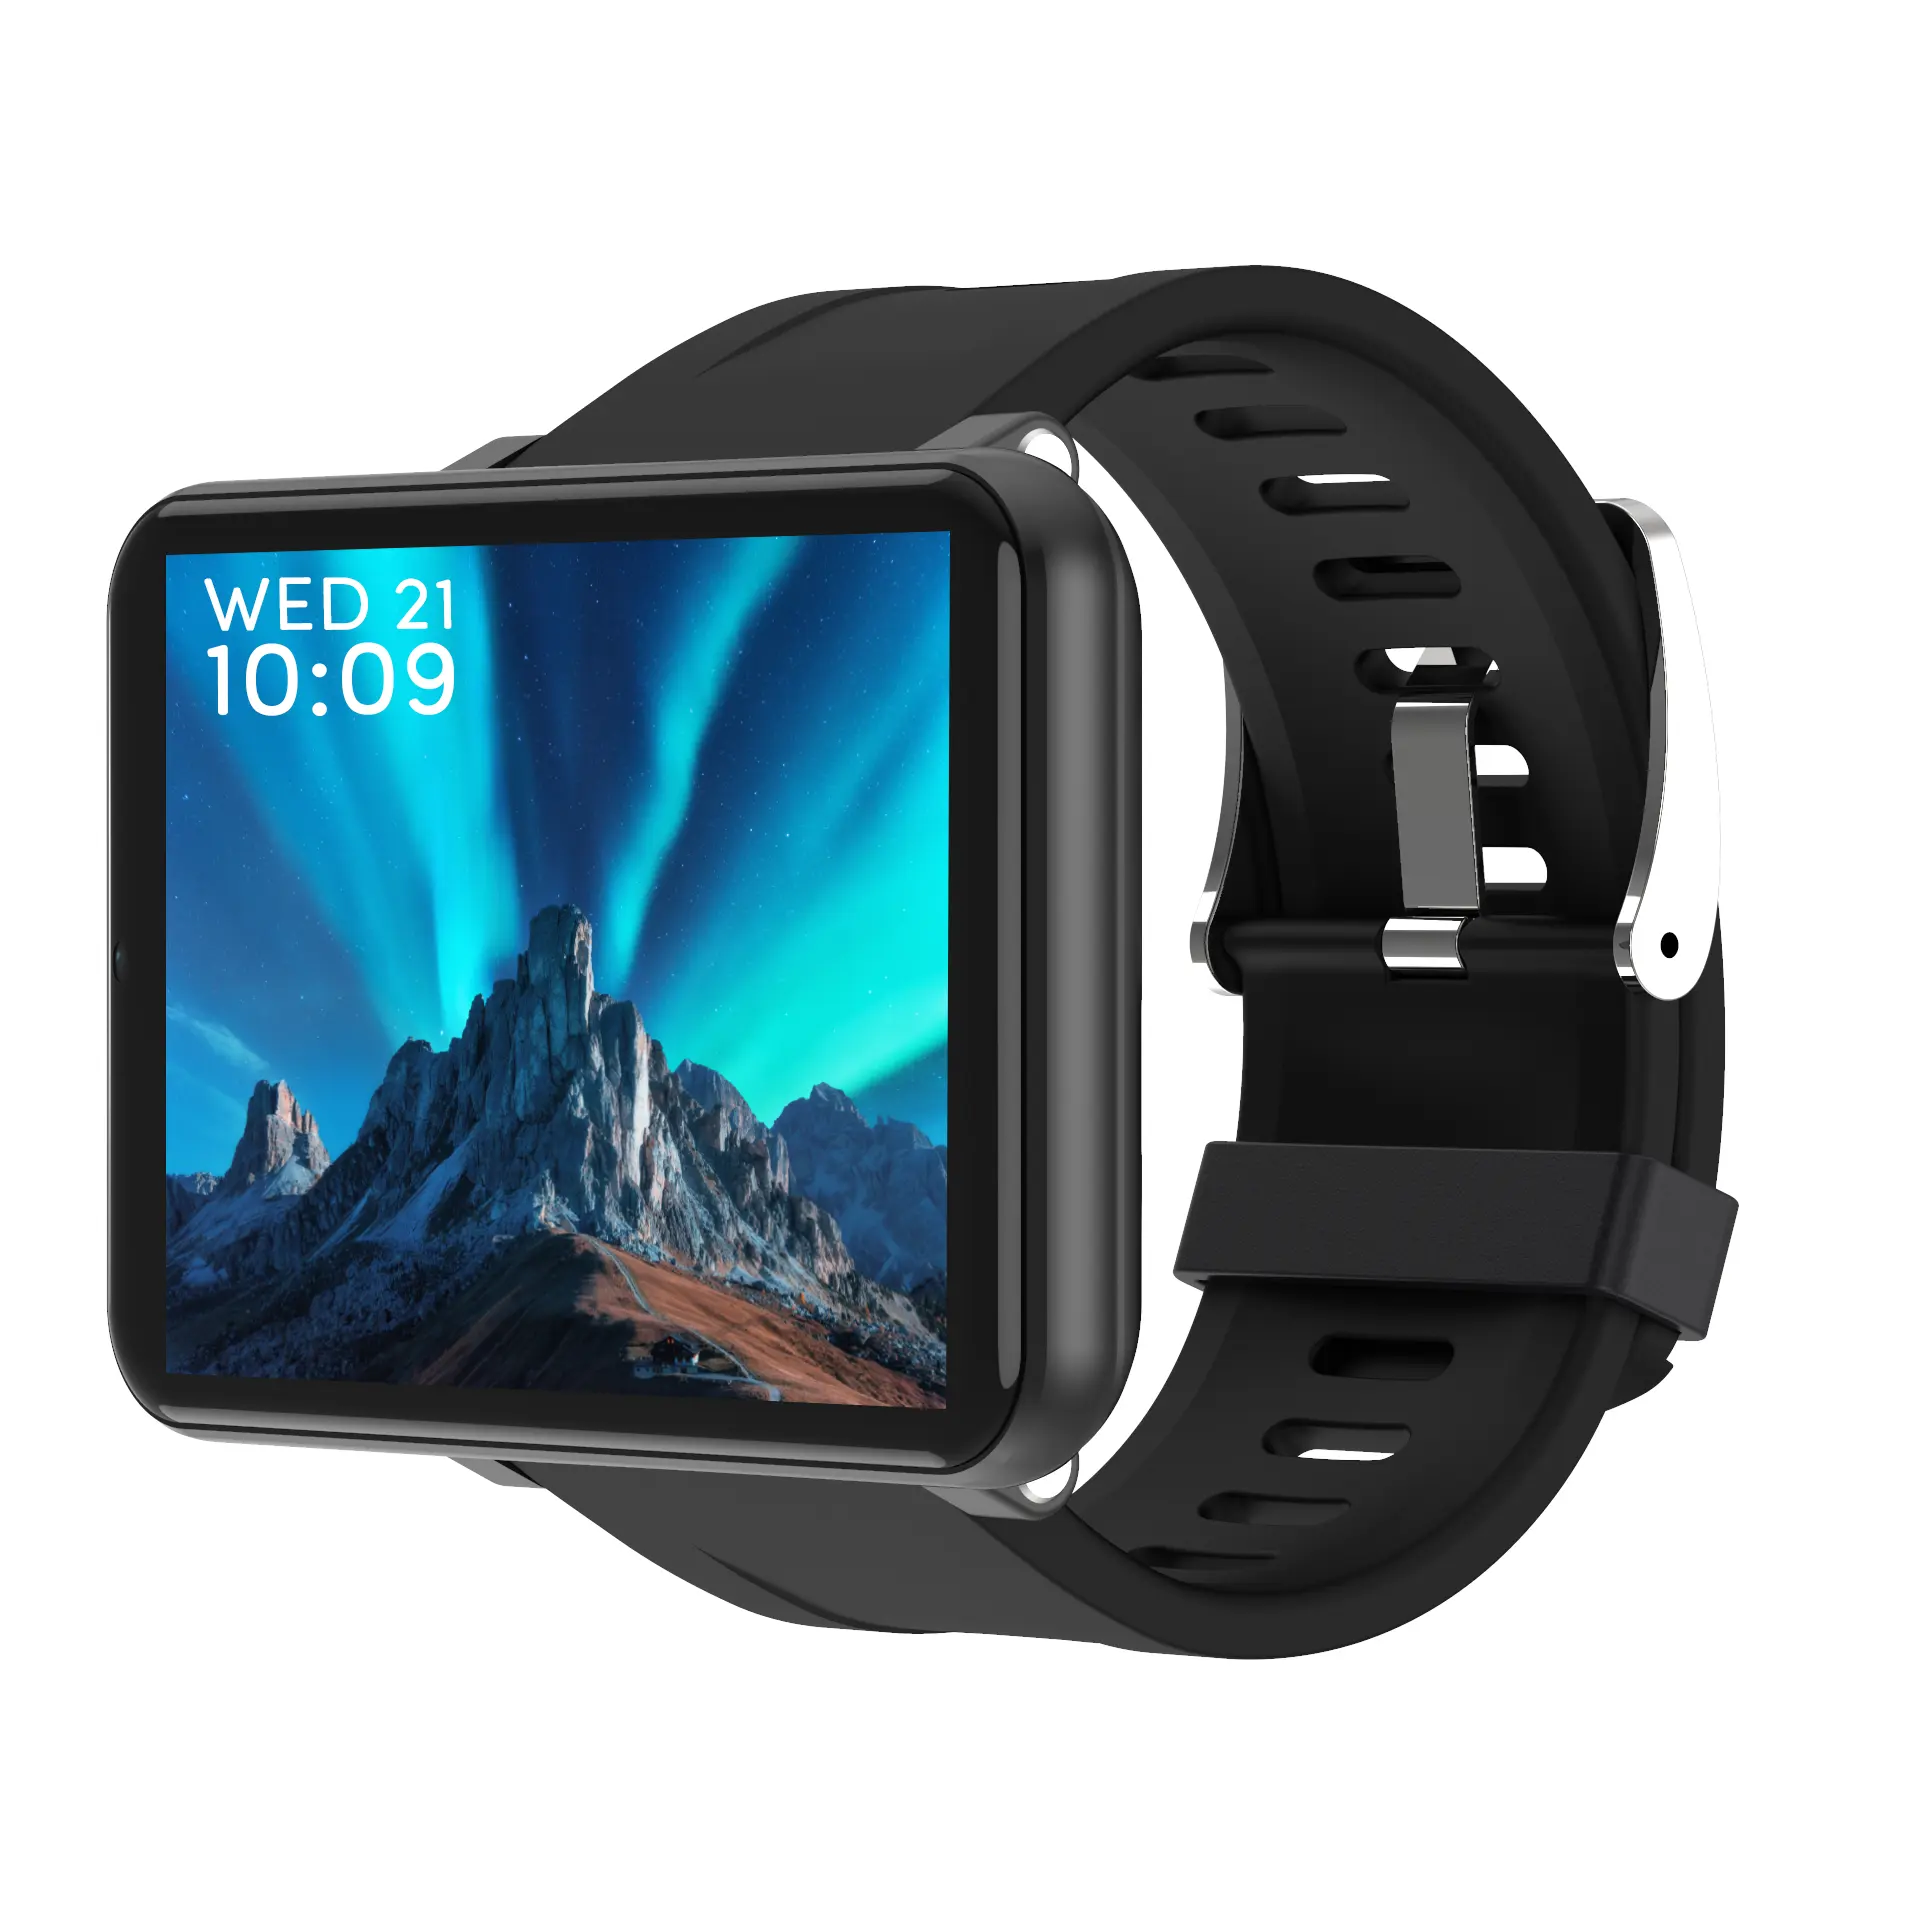 2020 حار بيع ساعة ذكية DM100 smartwatch مع كاميرا oled 4g هاتف الساعة الذكي الروبوت